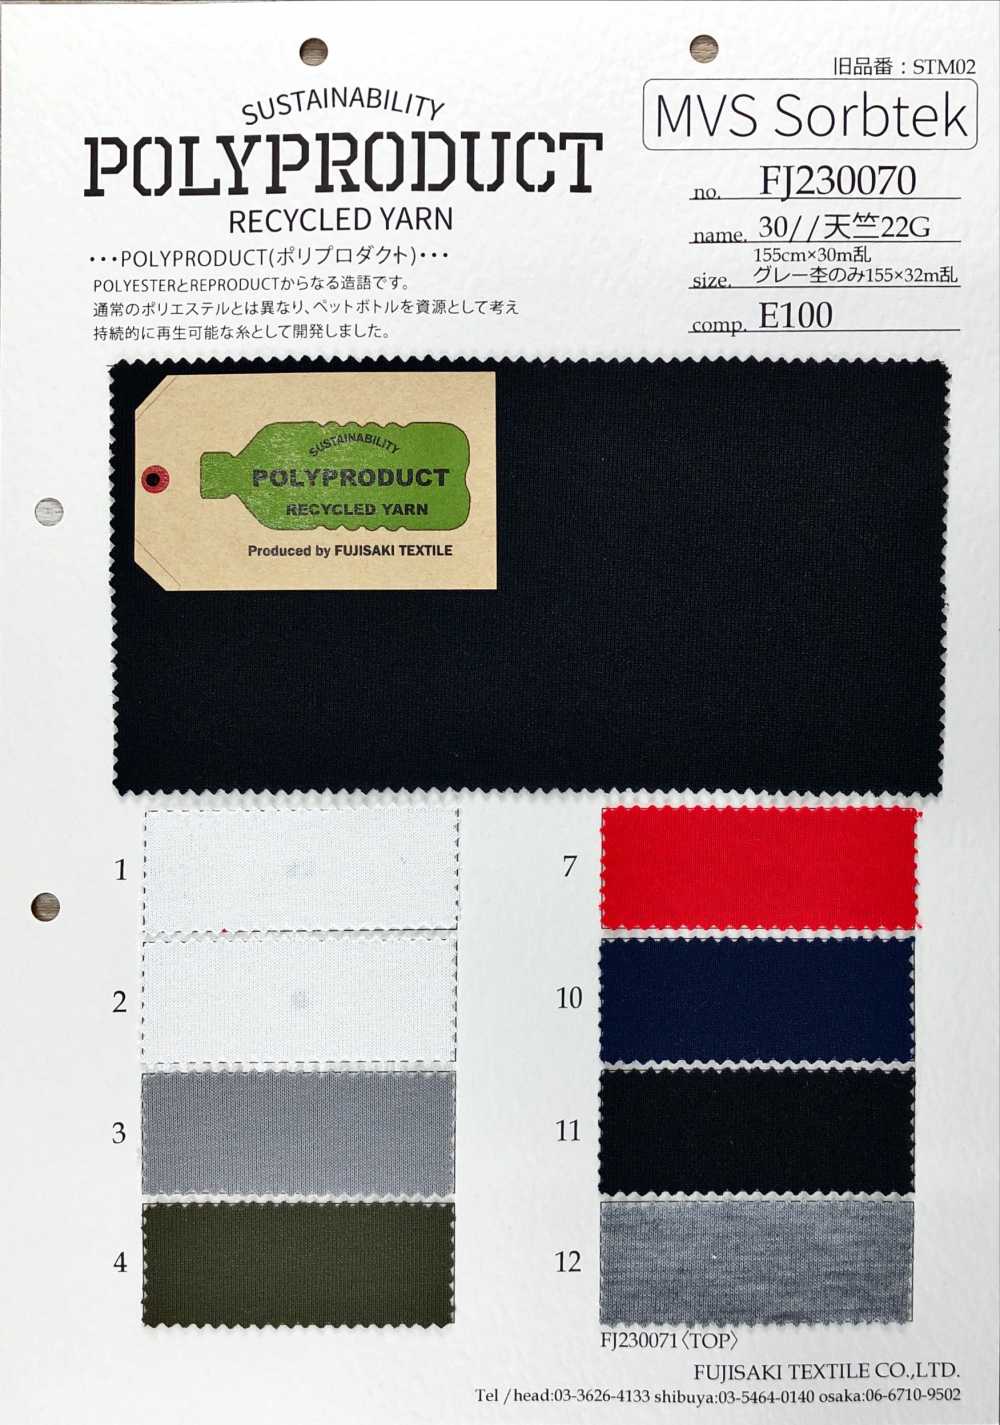 FJ230070 30//十天竺平针织物22G[面料] Fujisaki Textile